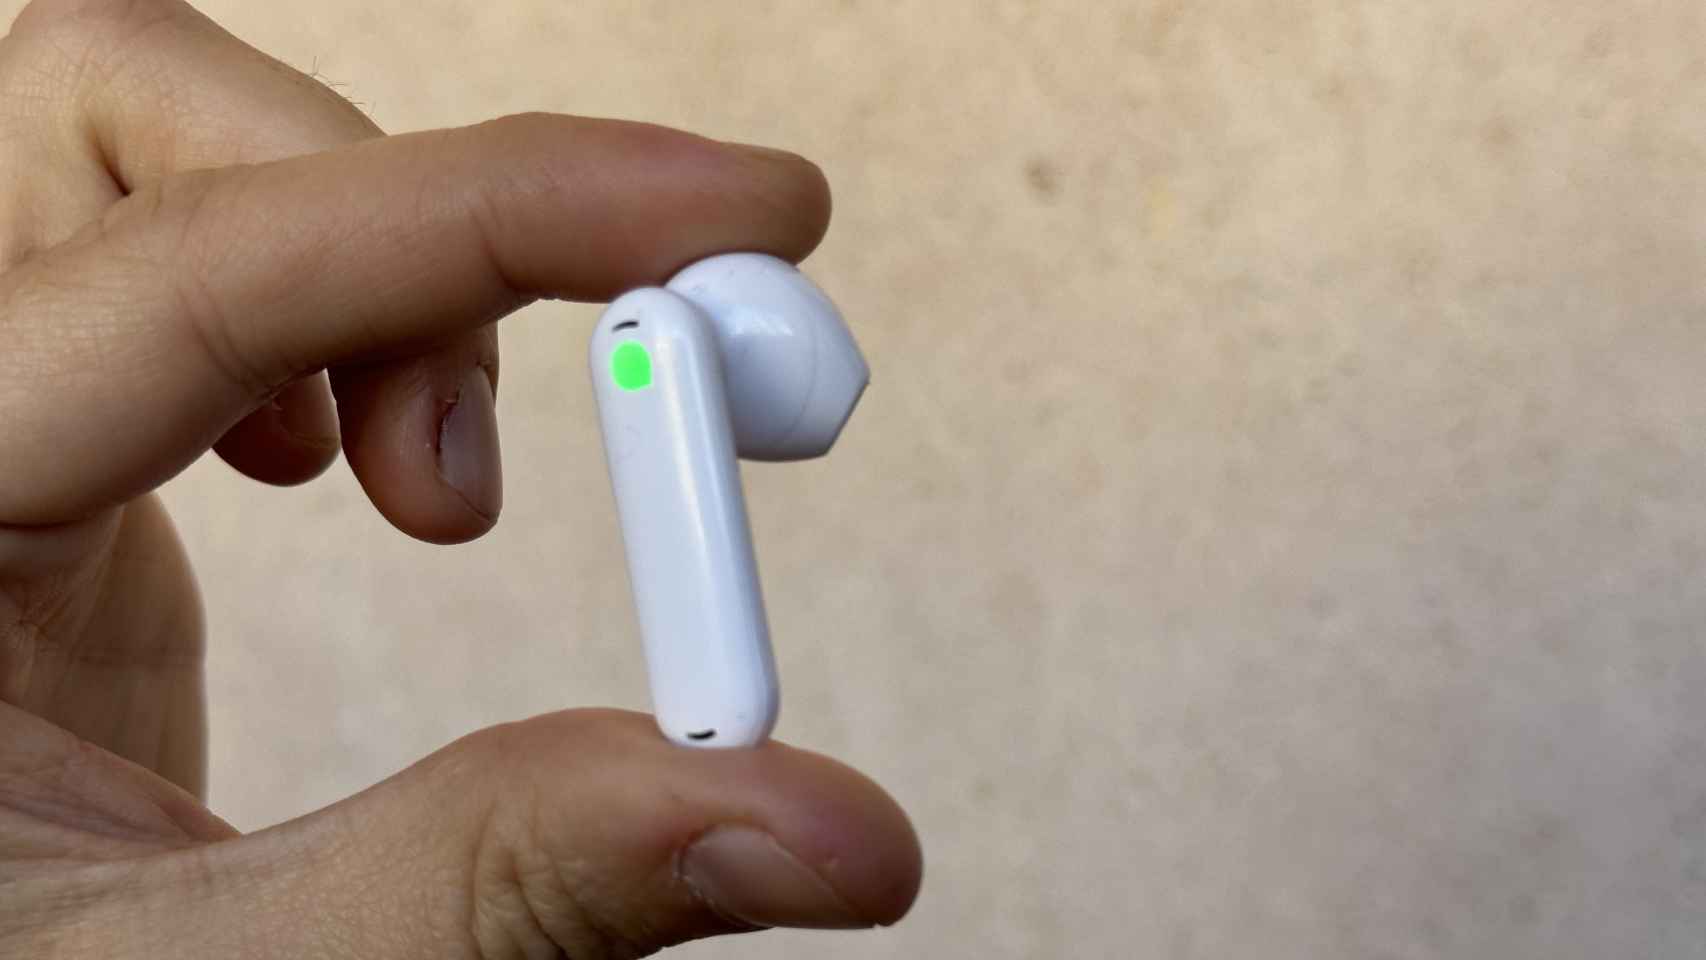 Probamos los auriculares traductores que se han vuelto populares en TikTok